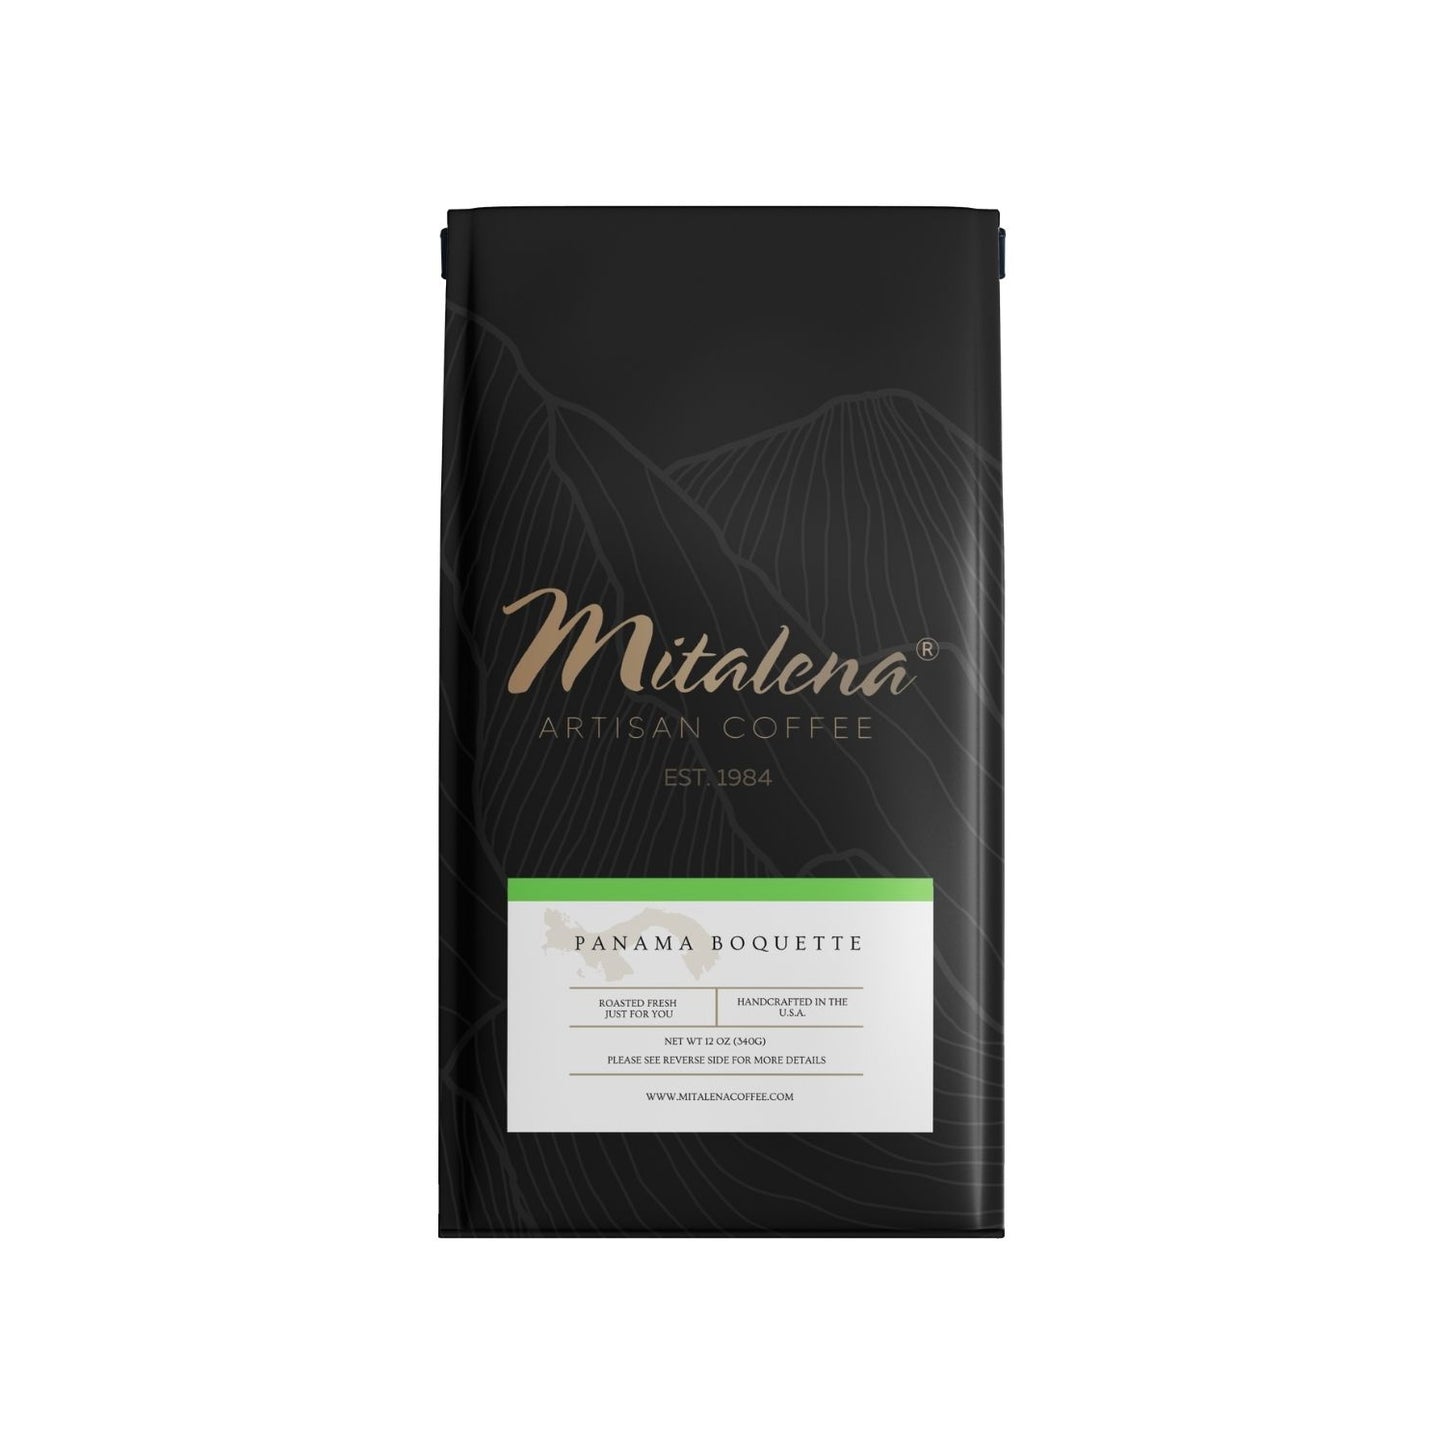 Mitalena Coffee - Panama Boquette Green, 12 oz.